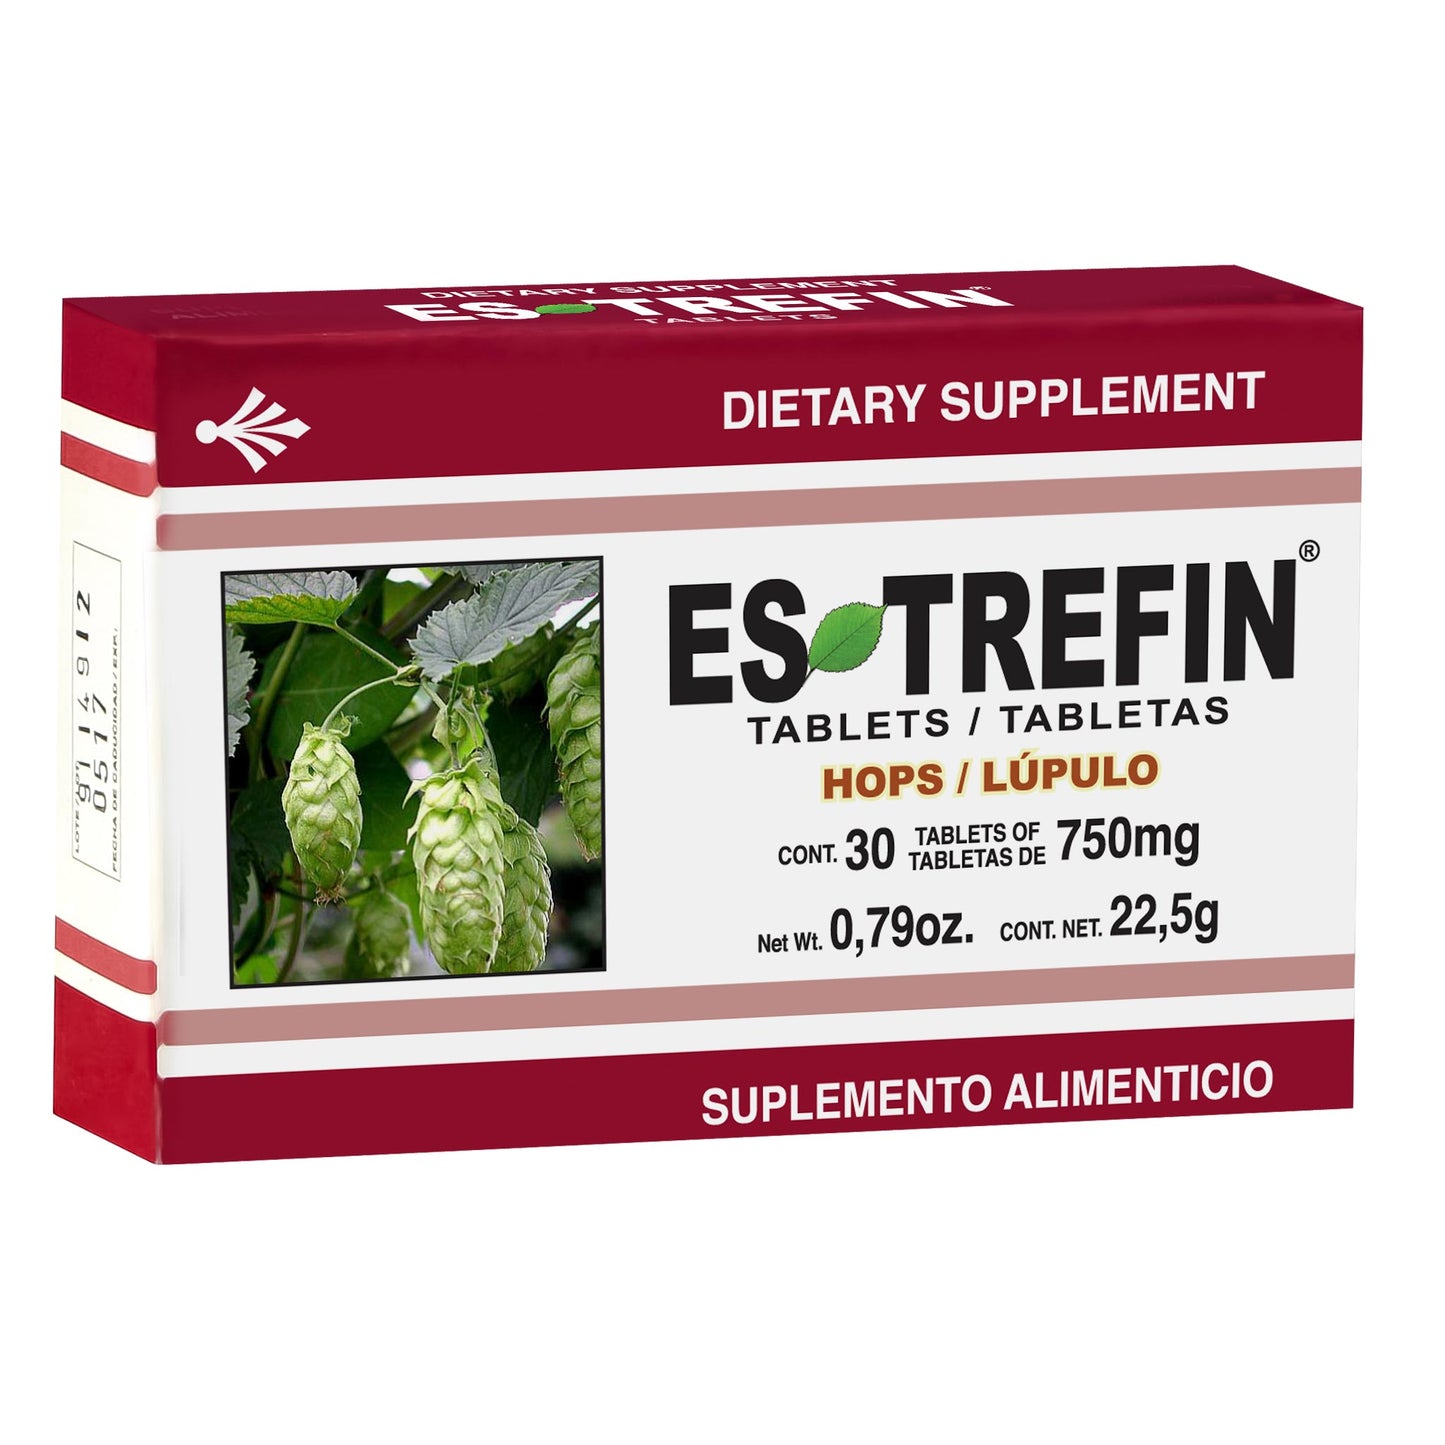 ESTREFIN ® 30 tabletas